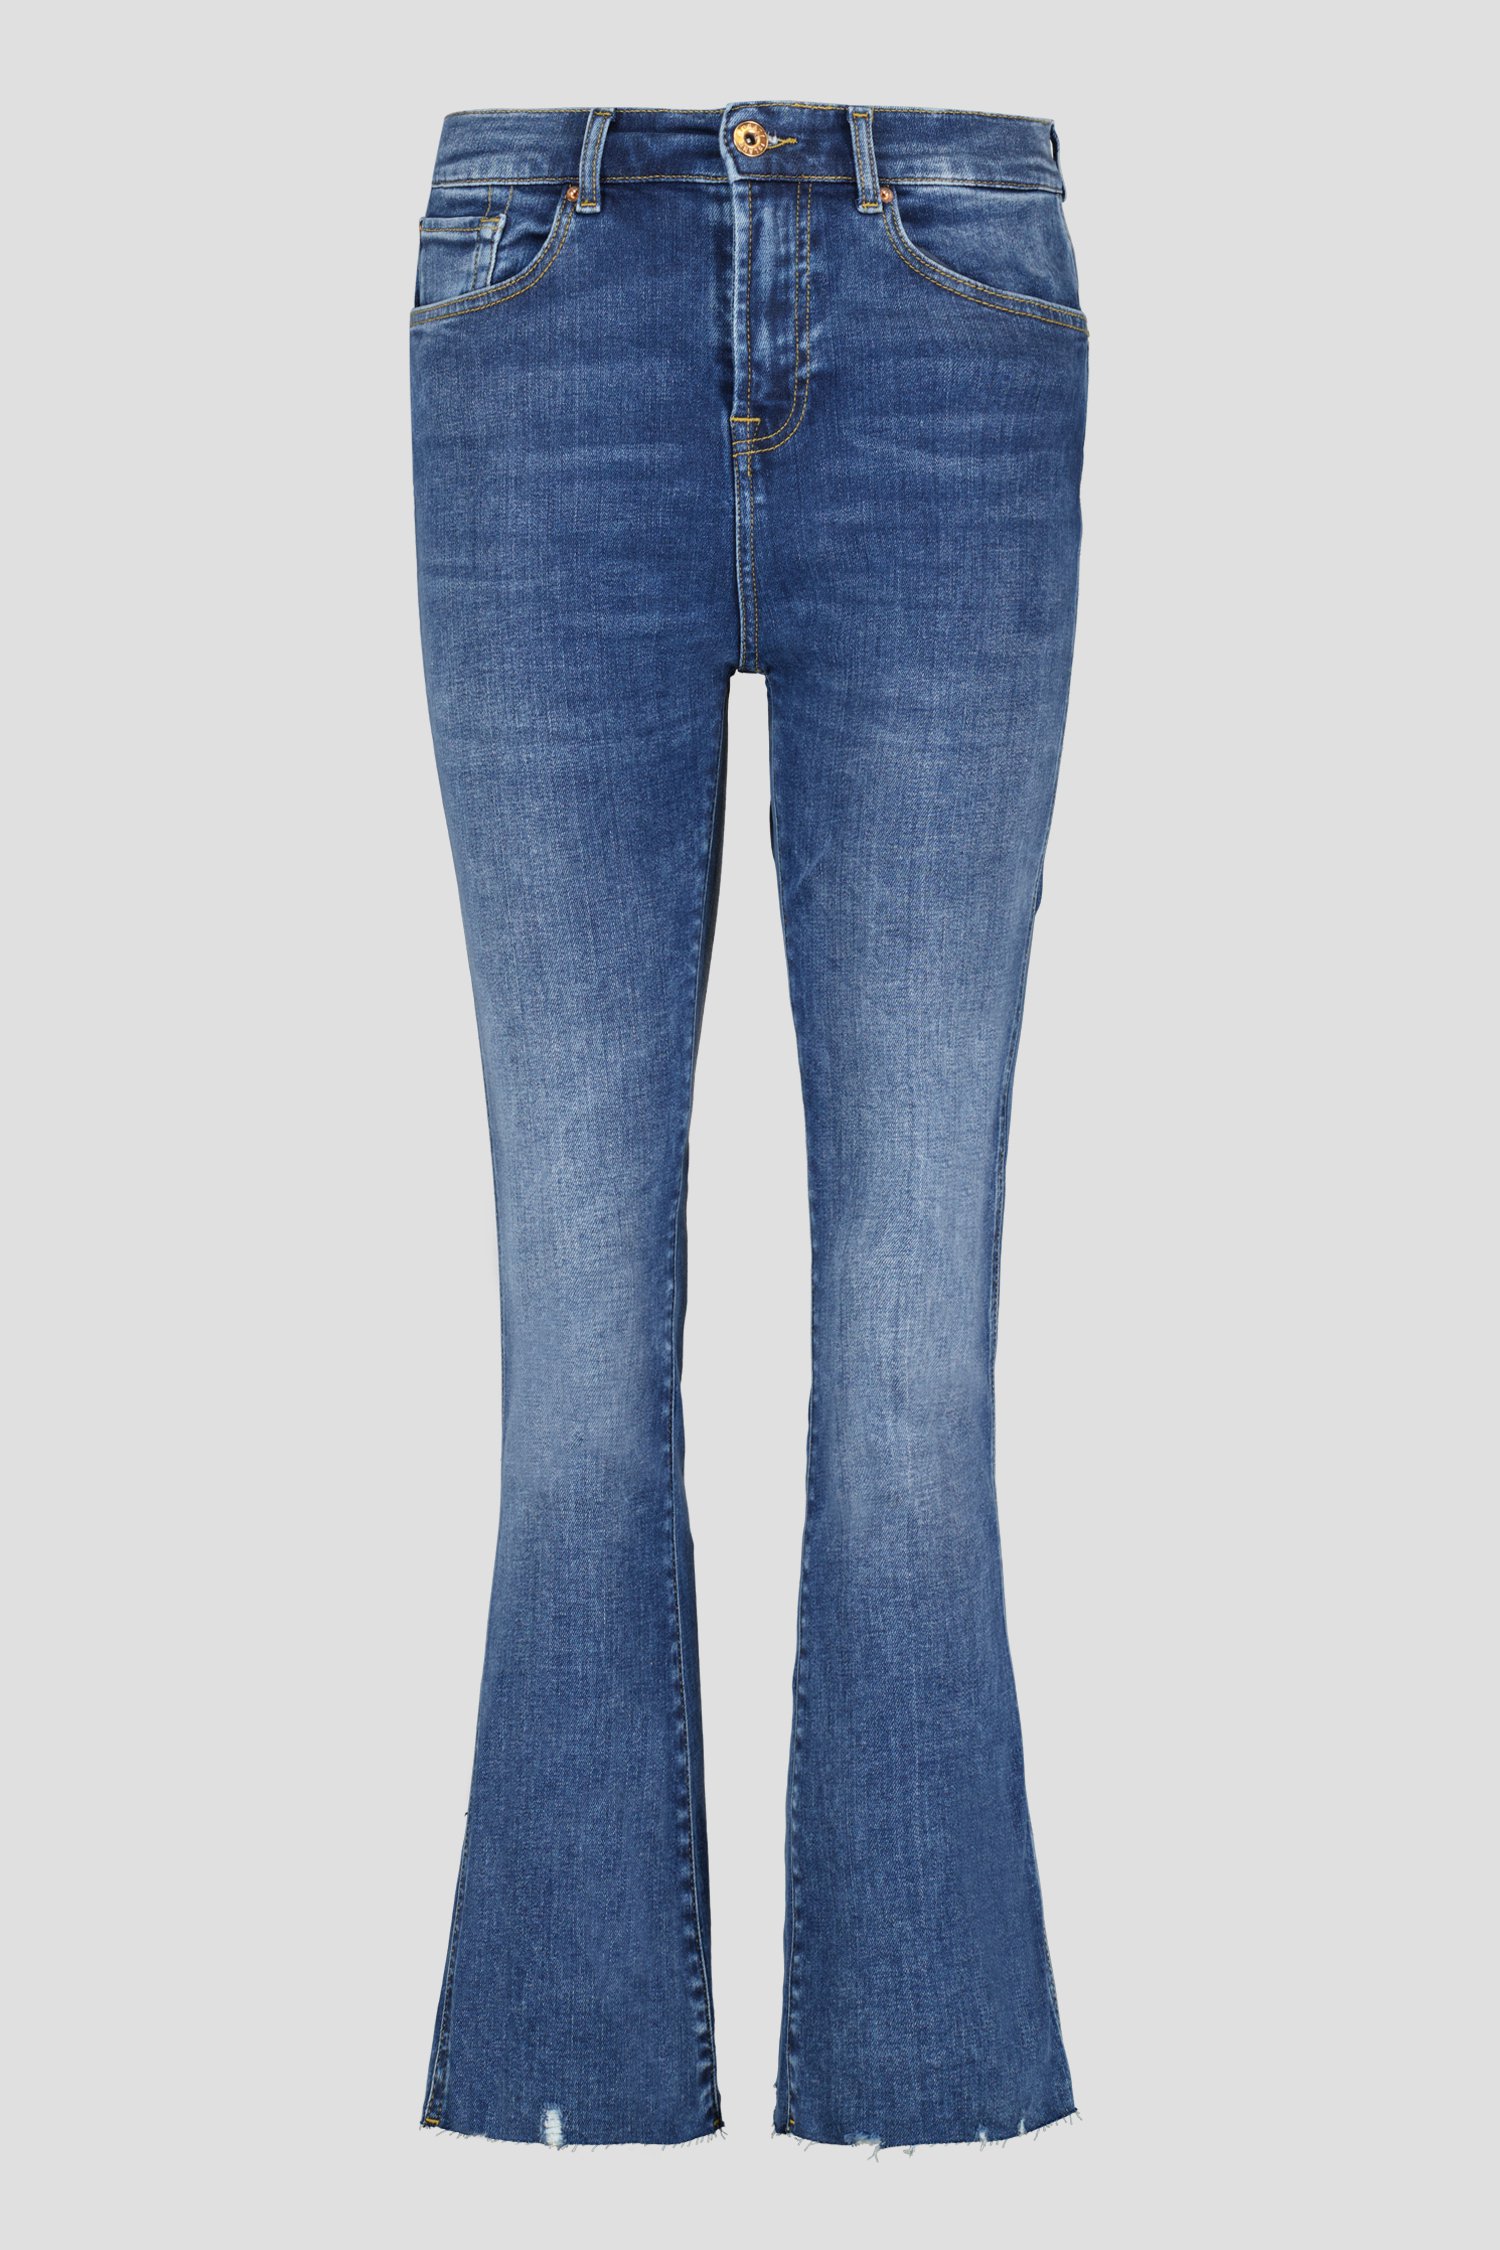 Donkerblauwe jeans - Fanny - Slim cropped fit van Liberty Island Denim voor Dames